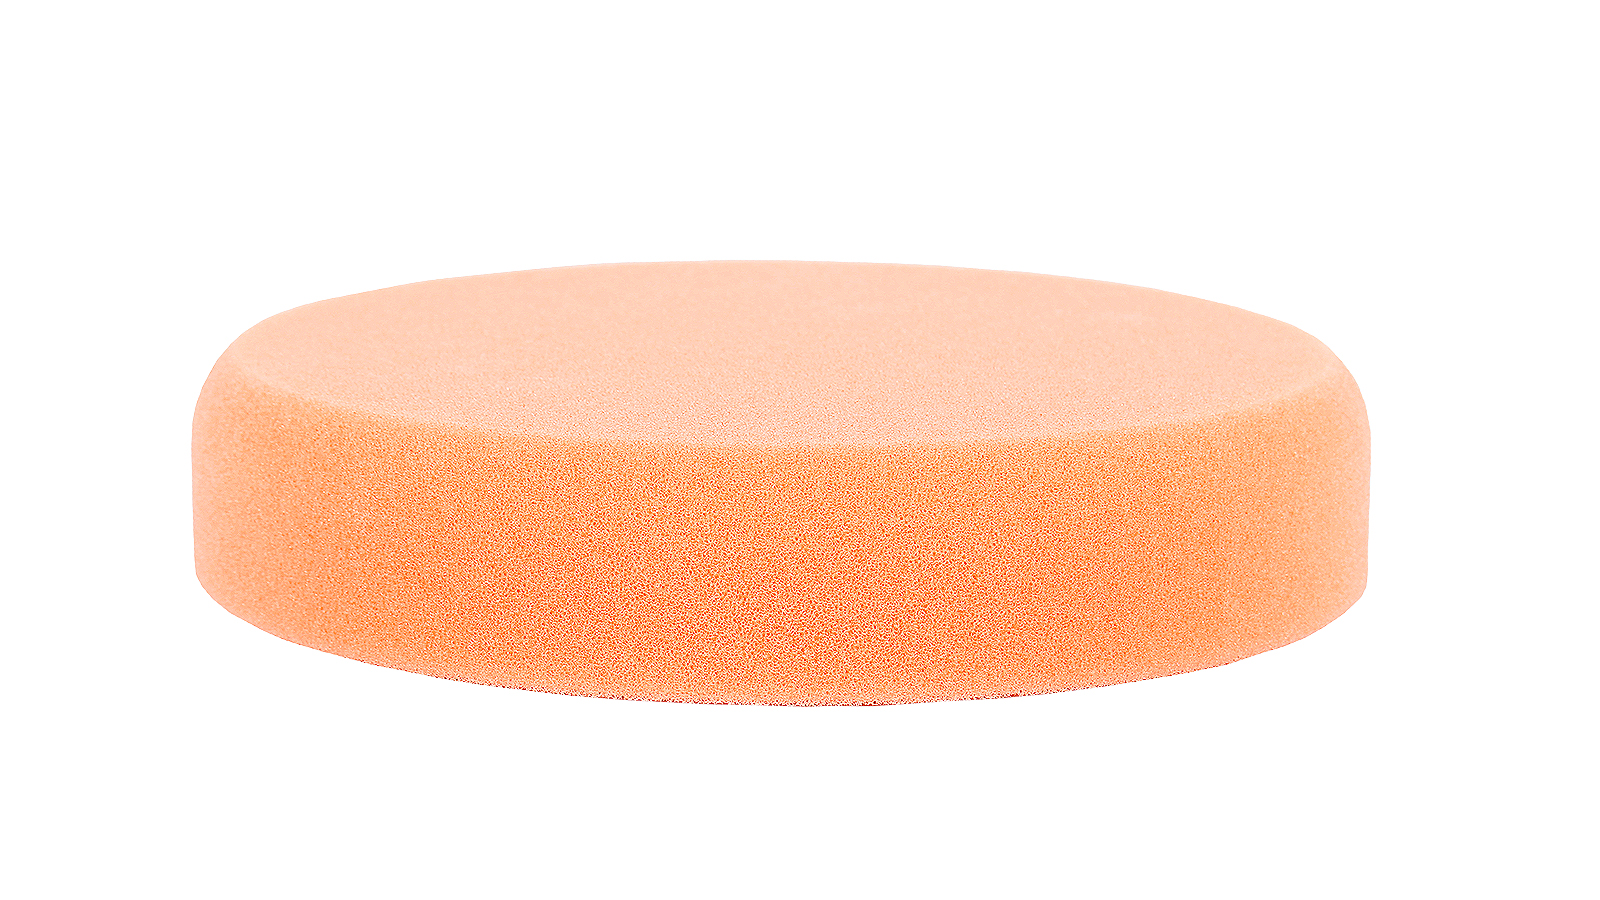 Круг полировальный RoxelPro 150х30 мм оранжевый средней жесткости полировальный диск на липучке pro sto 125x30 мм средней жесткости оранжевый jh 007 5смо 00